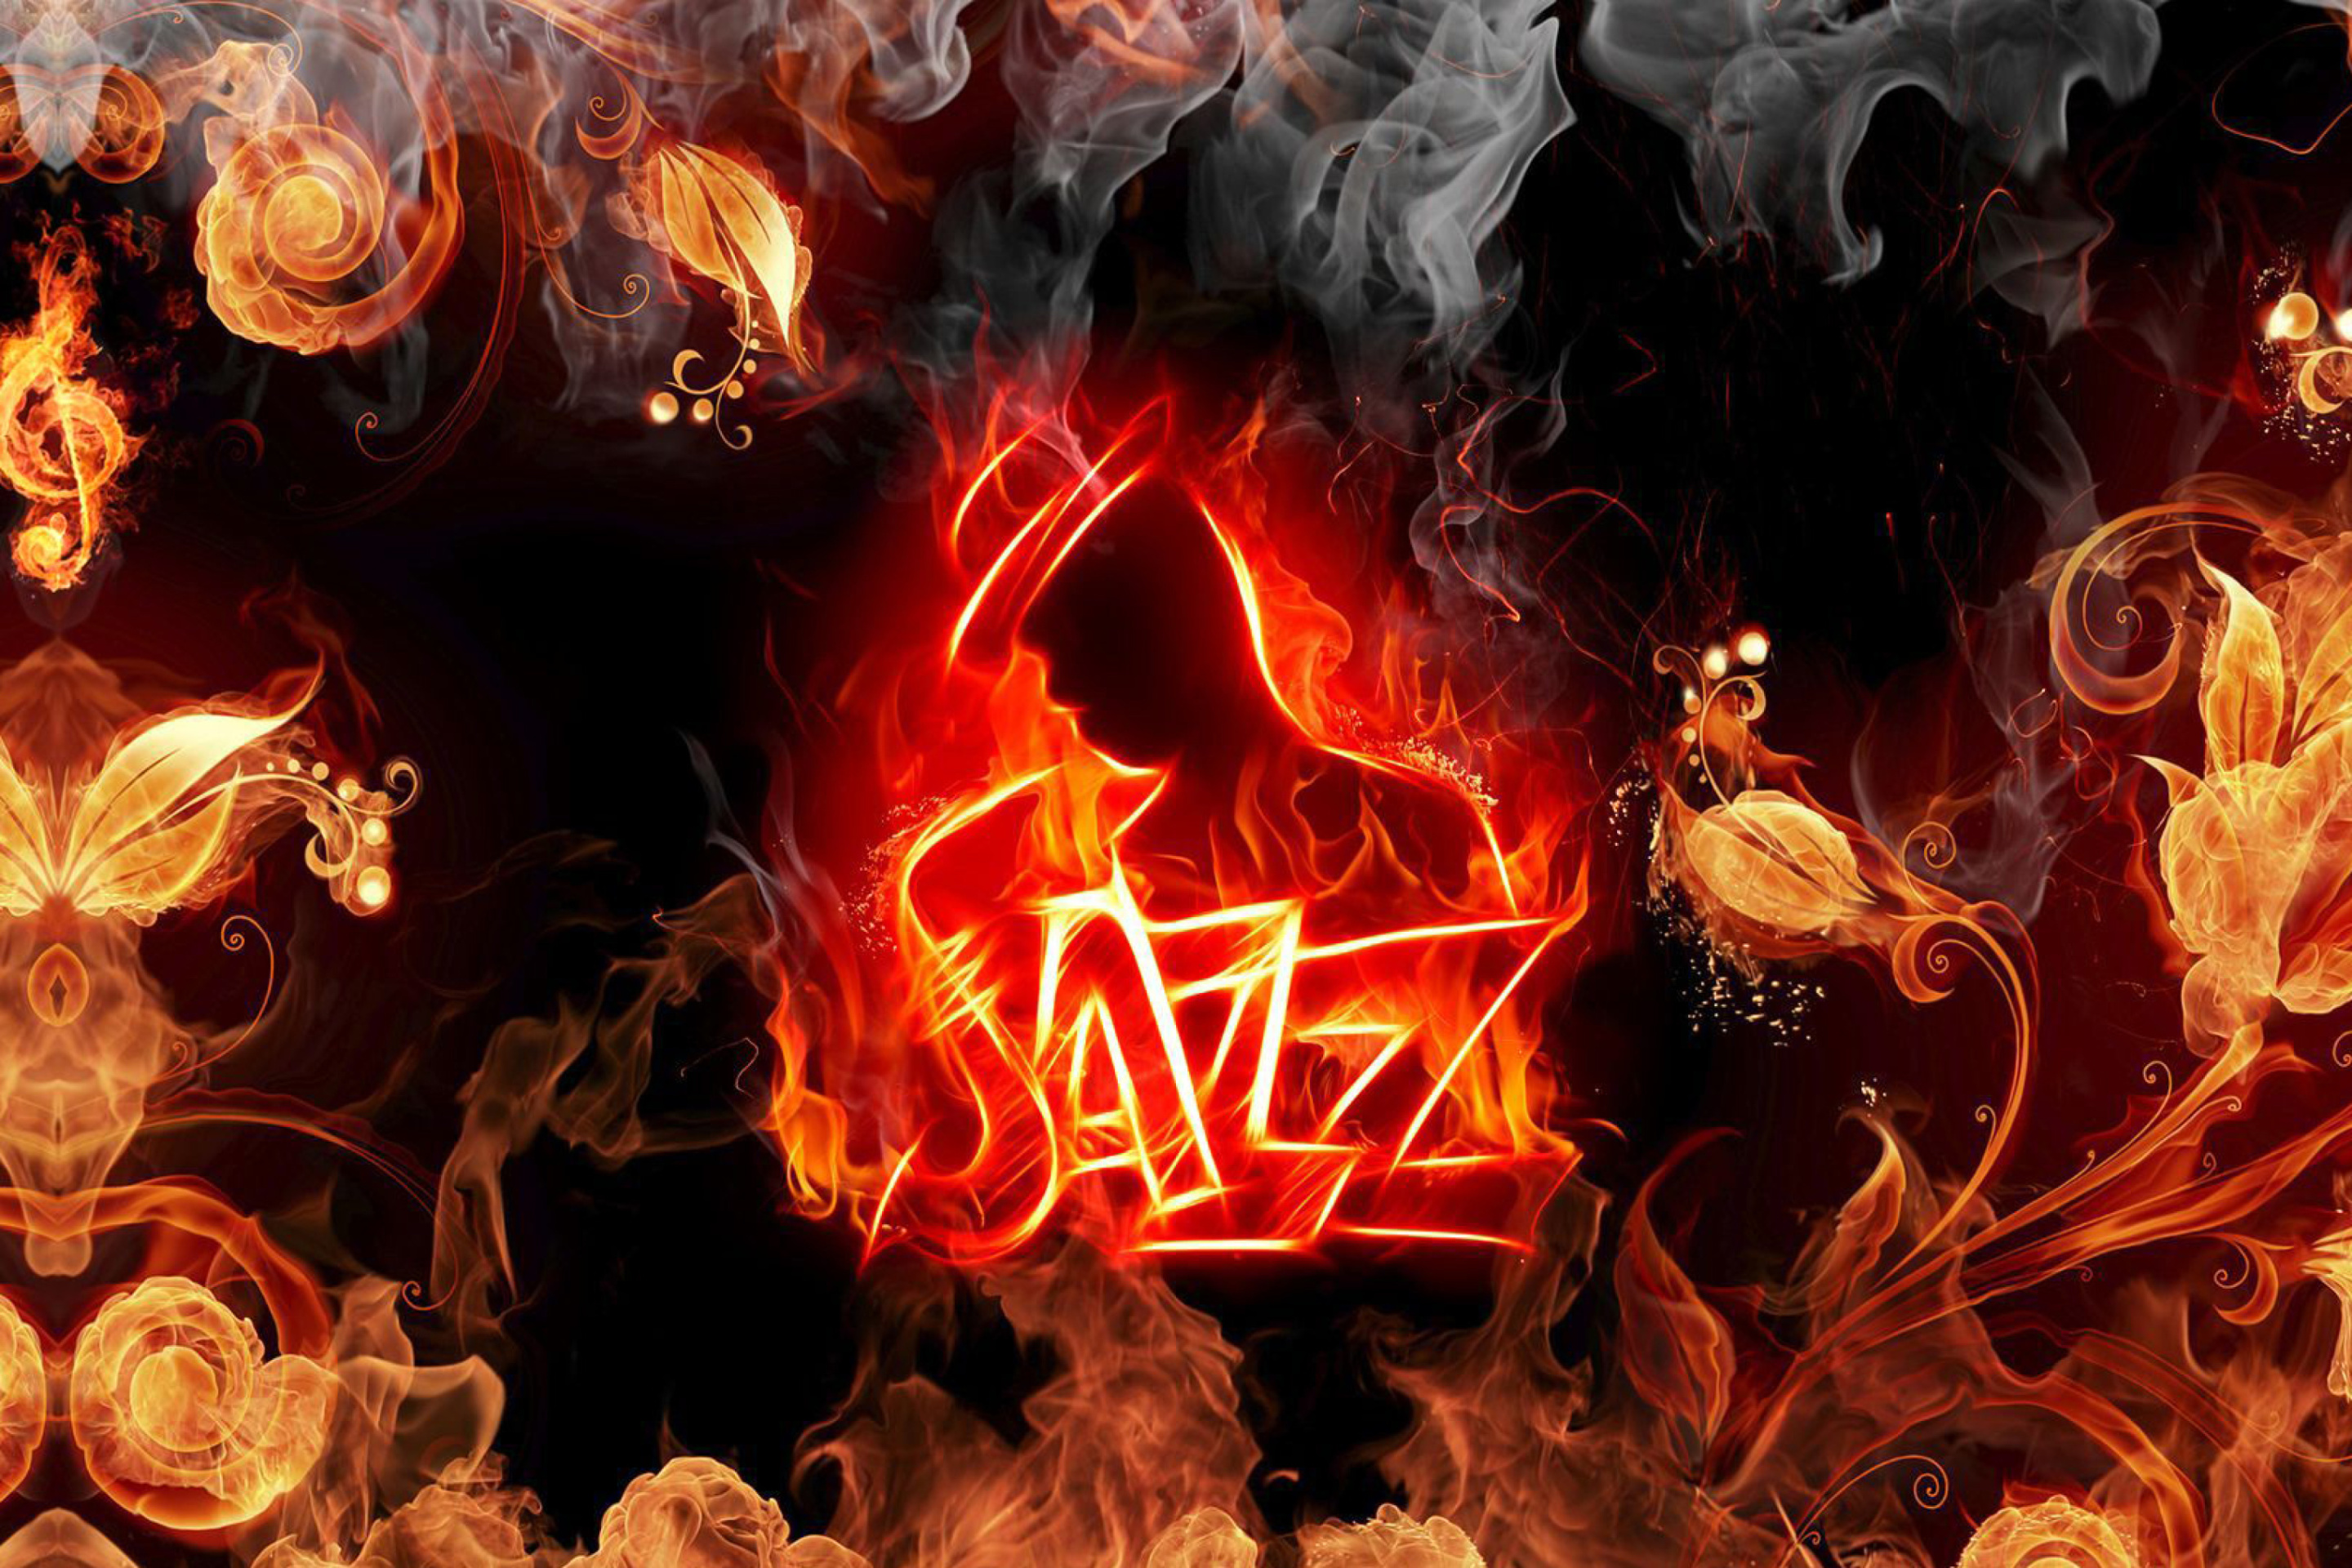 Das Jazz Fire HD Wallpaper 2880x1920